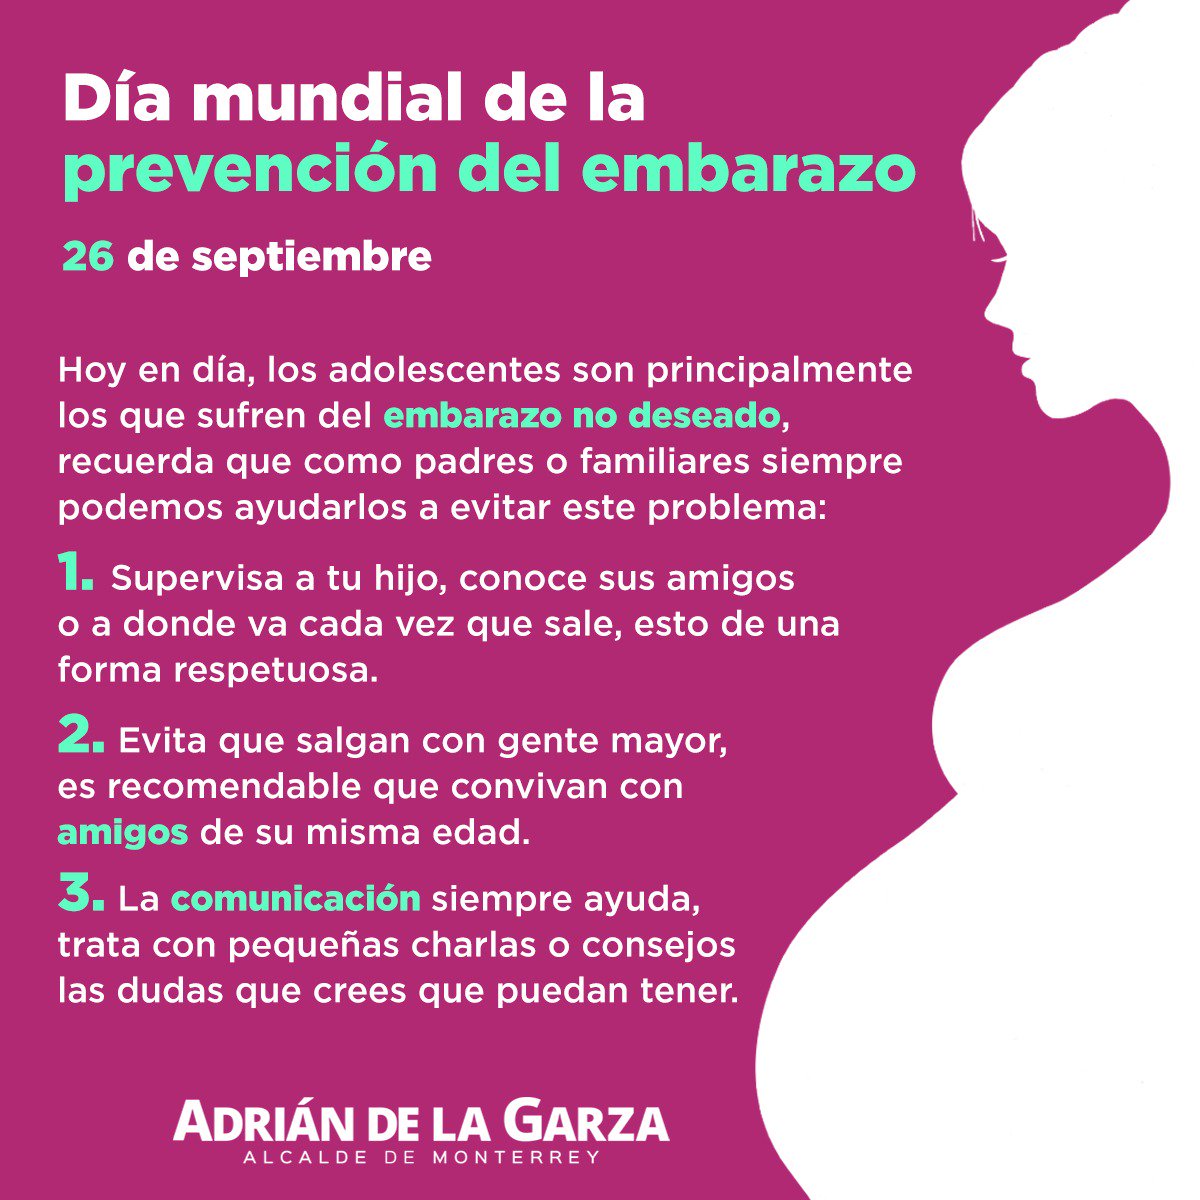 Adrián de la Garza on Twitter: 